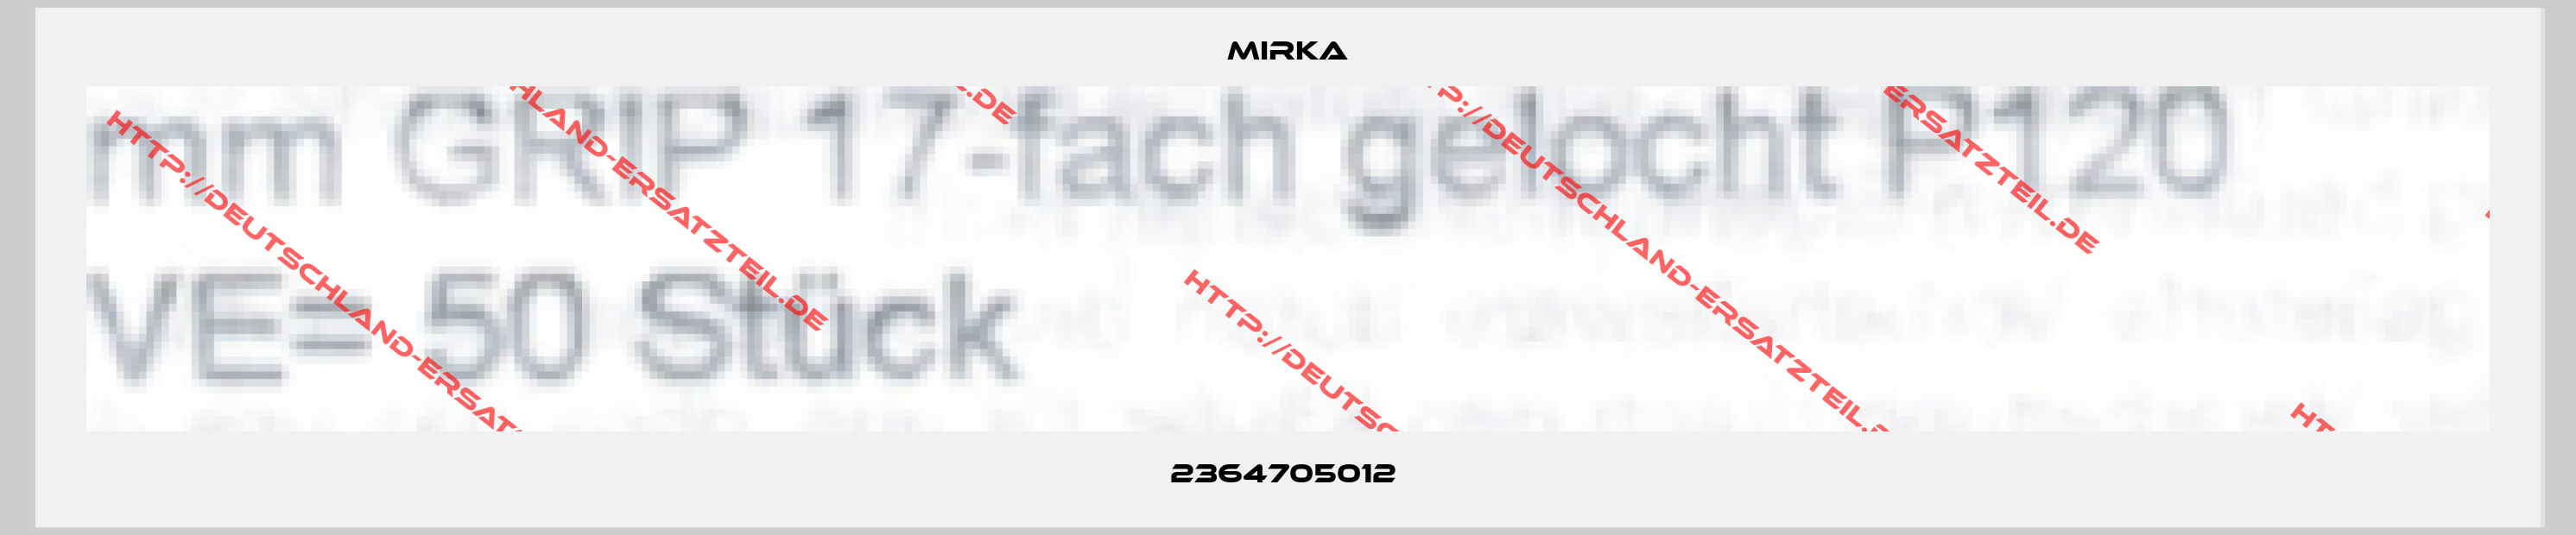 Mirka-2364705012 